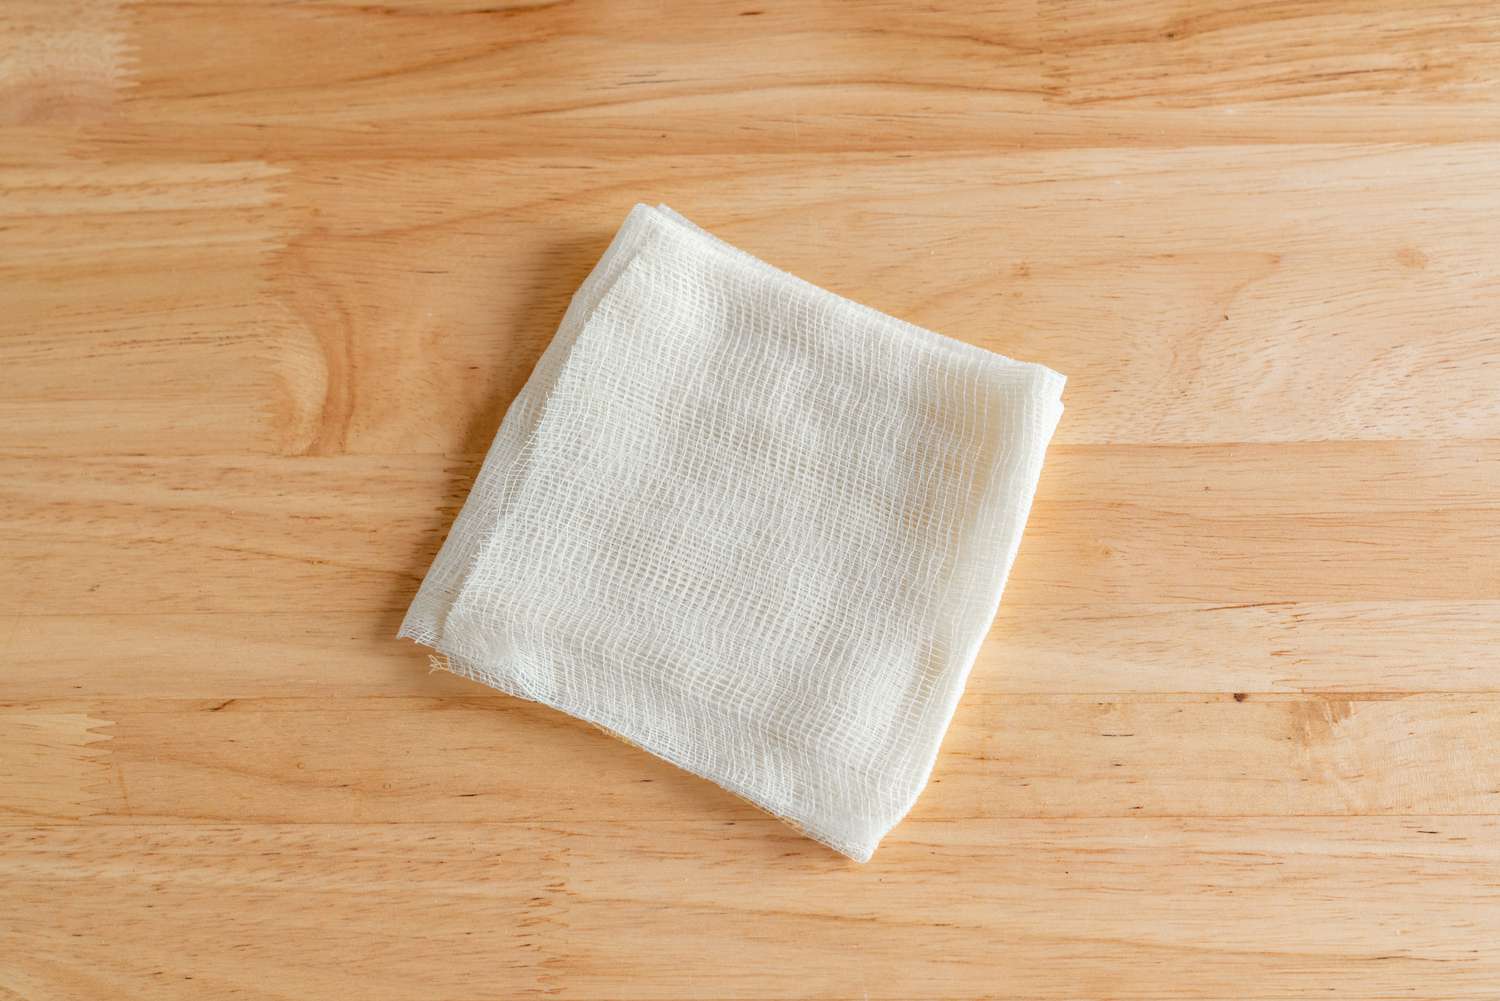 Paño de cocina de algodón blanco doblado sobre una superficie de madera